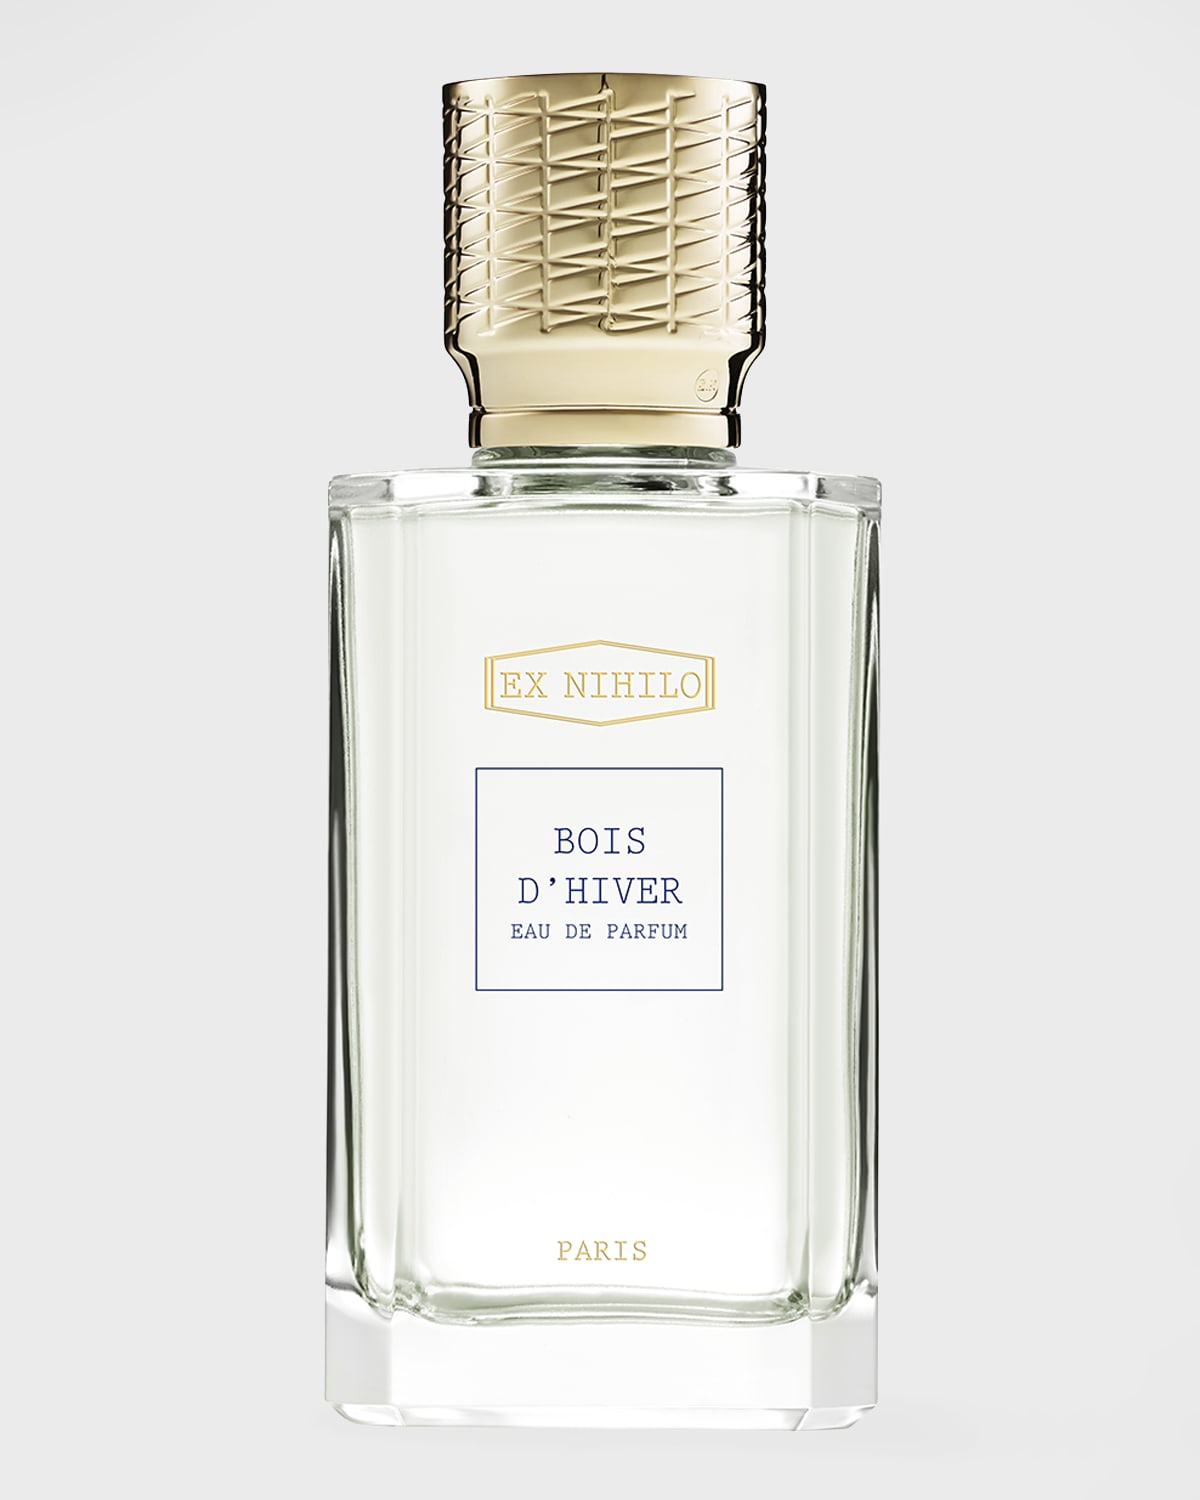 Ex Nihilo Bois d'Hiver Eau de Parfum, 100 mL